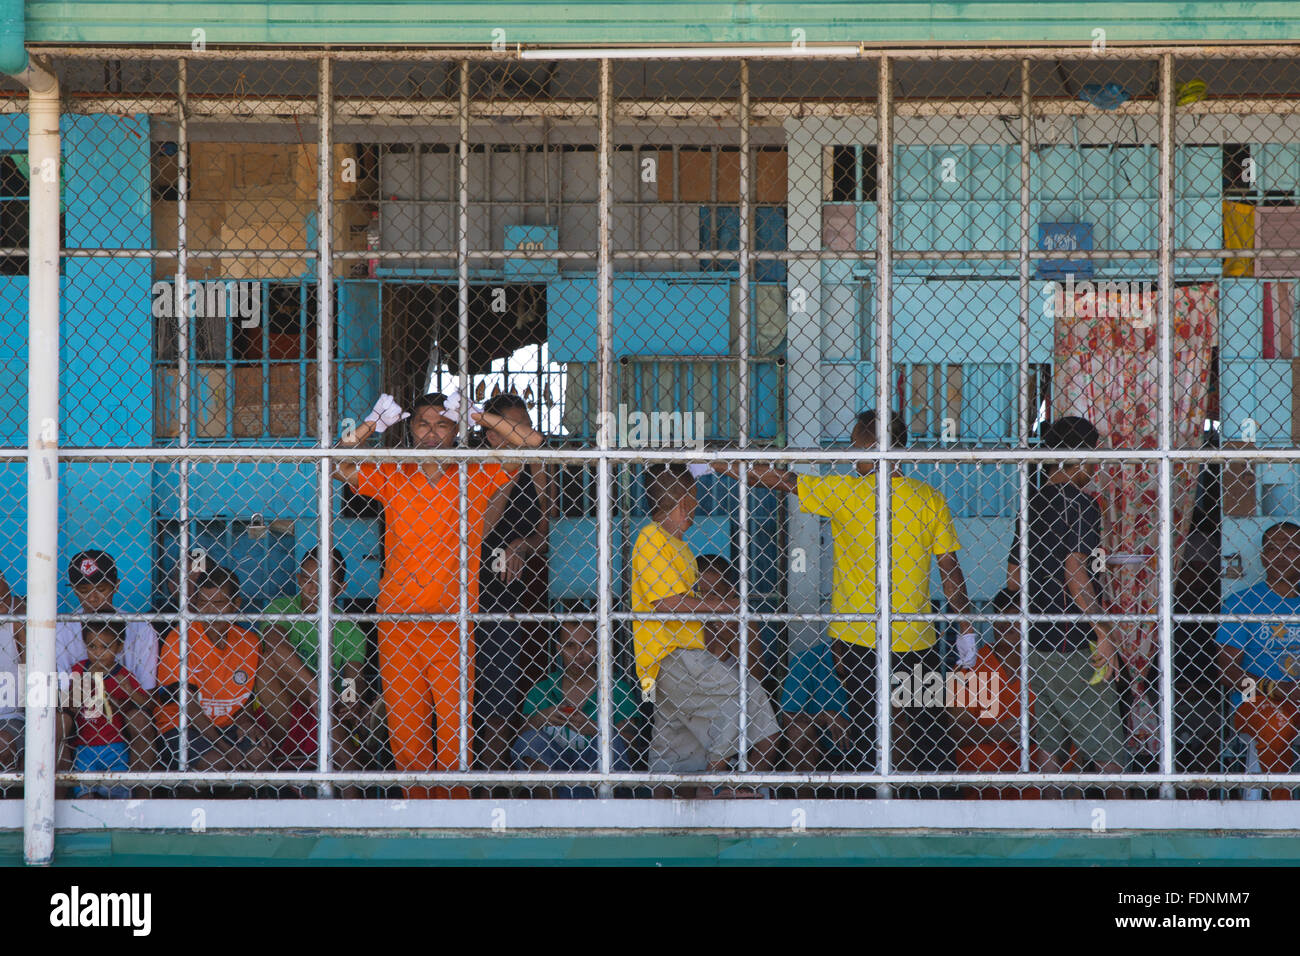 Los reclusos de la Prisión Provincial de Cebu y centro de rehabilitación, en la Ciudad de Cebu, Filipinas Foto de stock